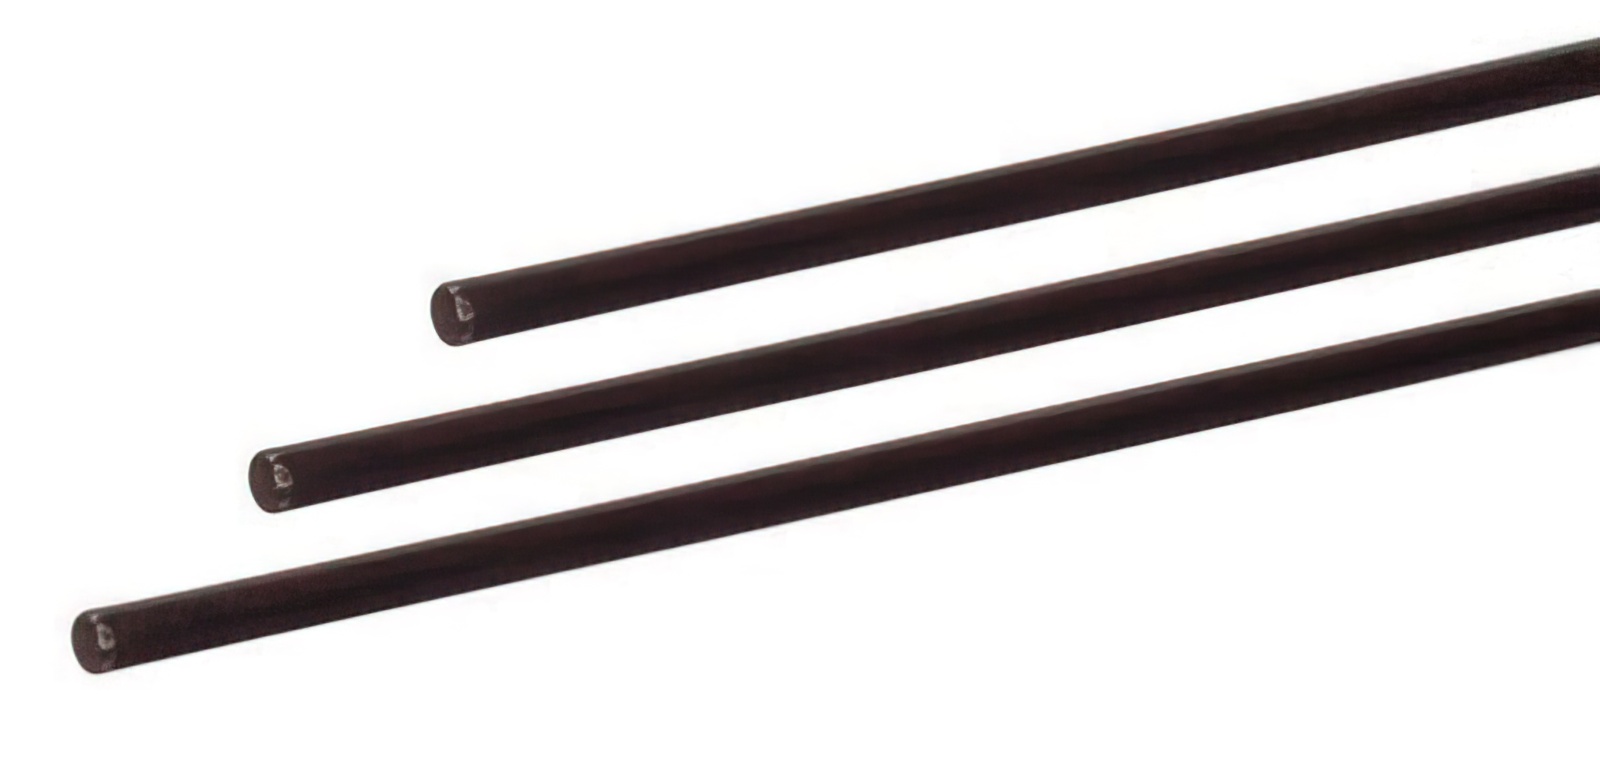 10 Stück - Gfk-Vollstab (Fiberglasstab/Glasfaserstab) 6  mm 200 cm schwarz für Drachen- und Modellbau Basteln Montagen Messebau Industrie Haushalt